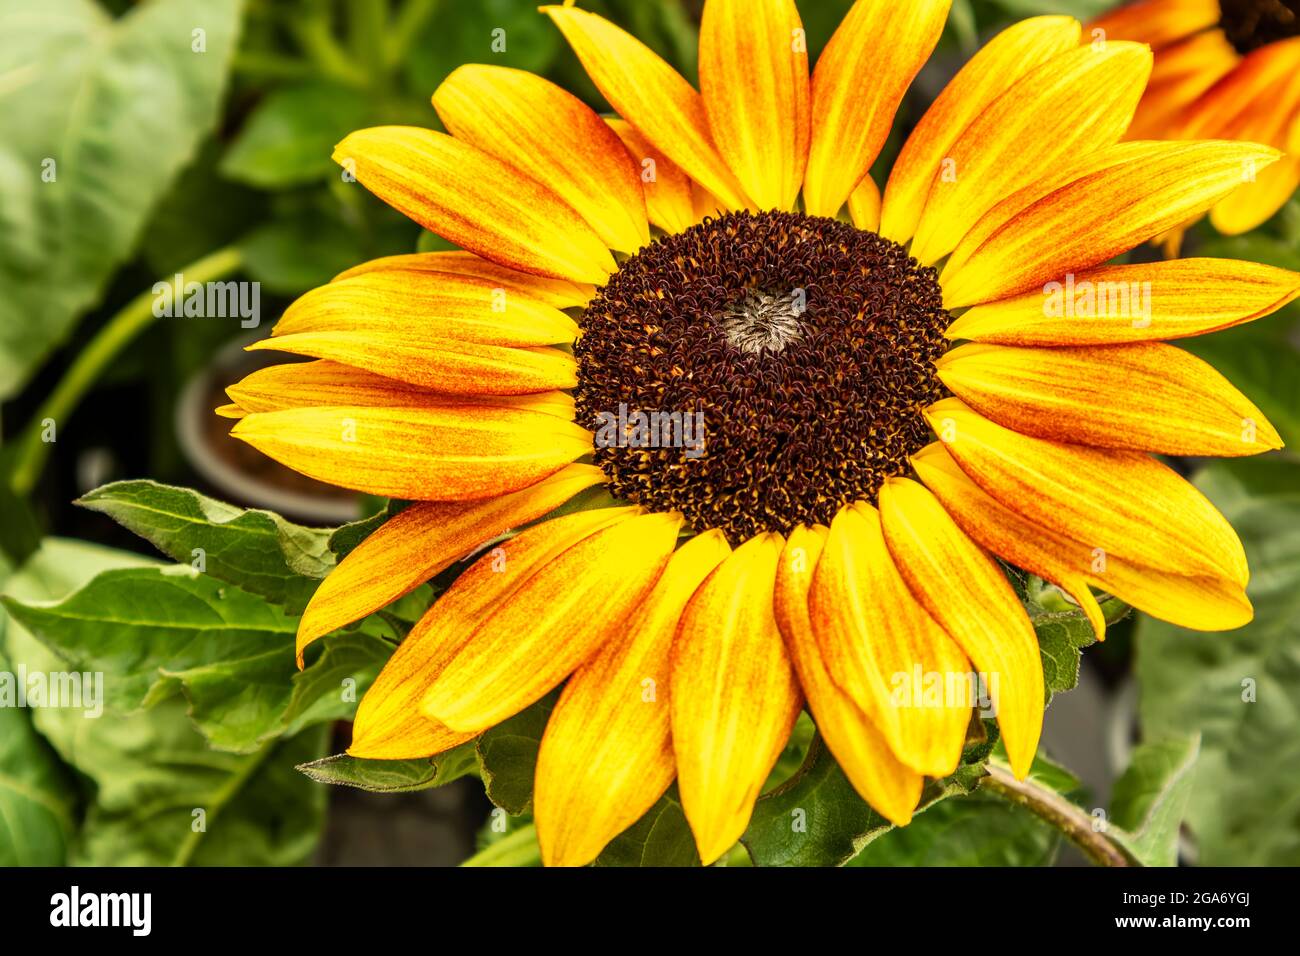 Schließt einen kleinen Sonnenblumenkopf. Stockfoto